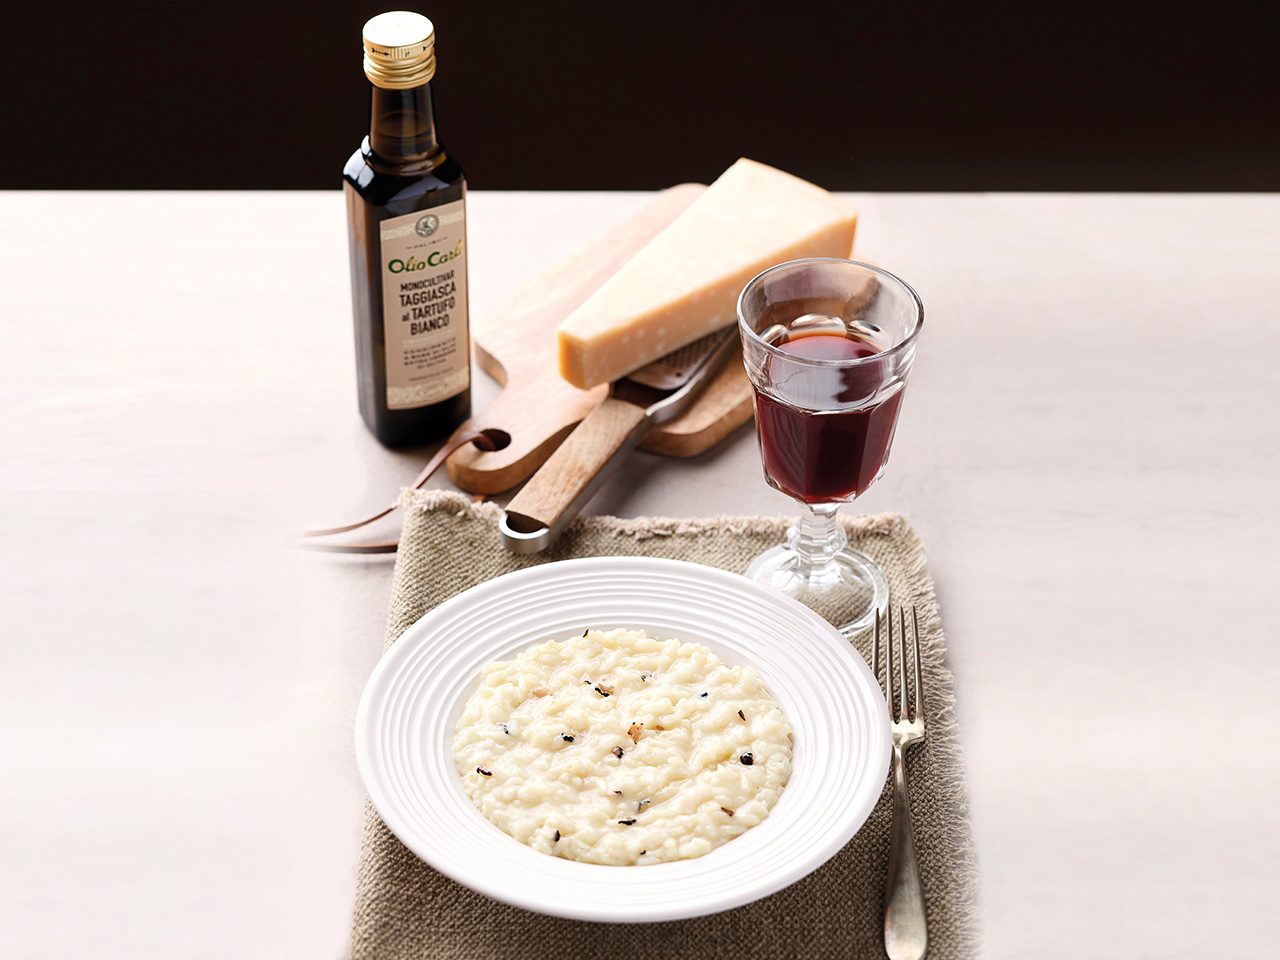 Teller mit Trüffel-Risotto, ein Glas Wein, Parmigiano Käse und Flasche Trüffelöl